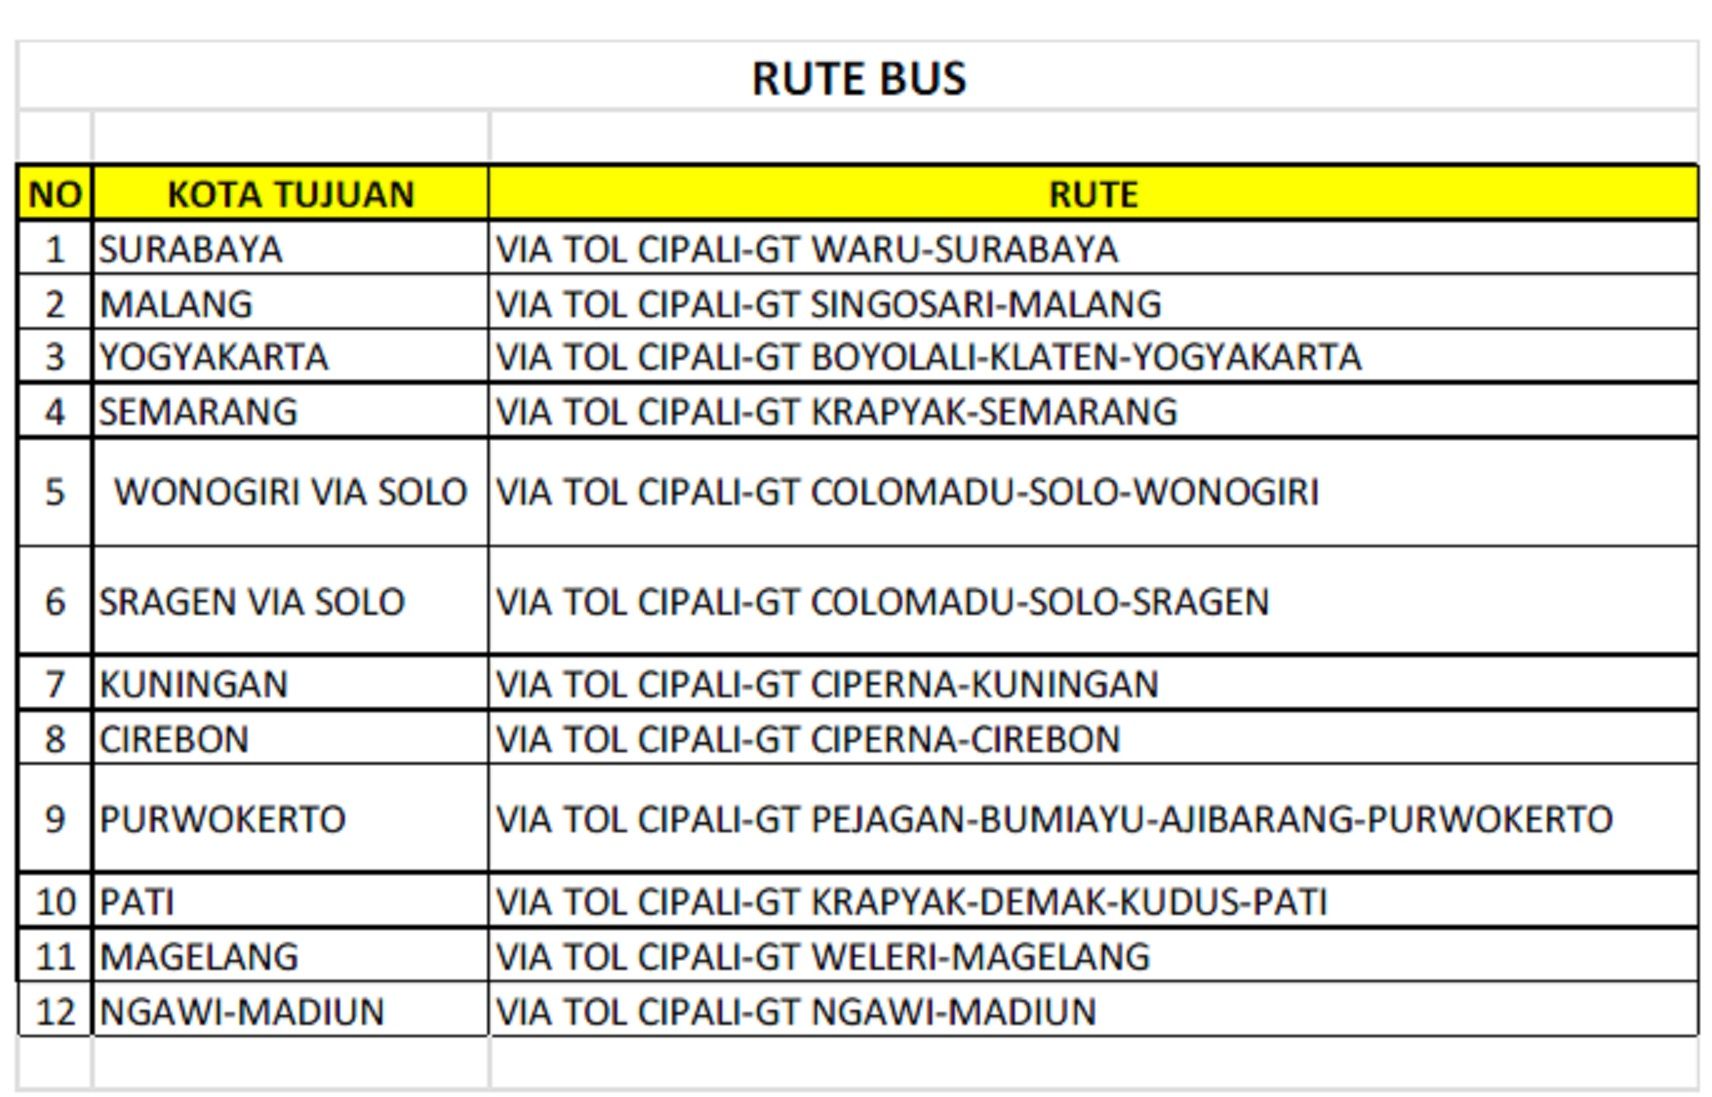 Rute Mudik gratis 2022 oleh Jasa Raharja Angkutan Bus